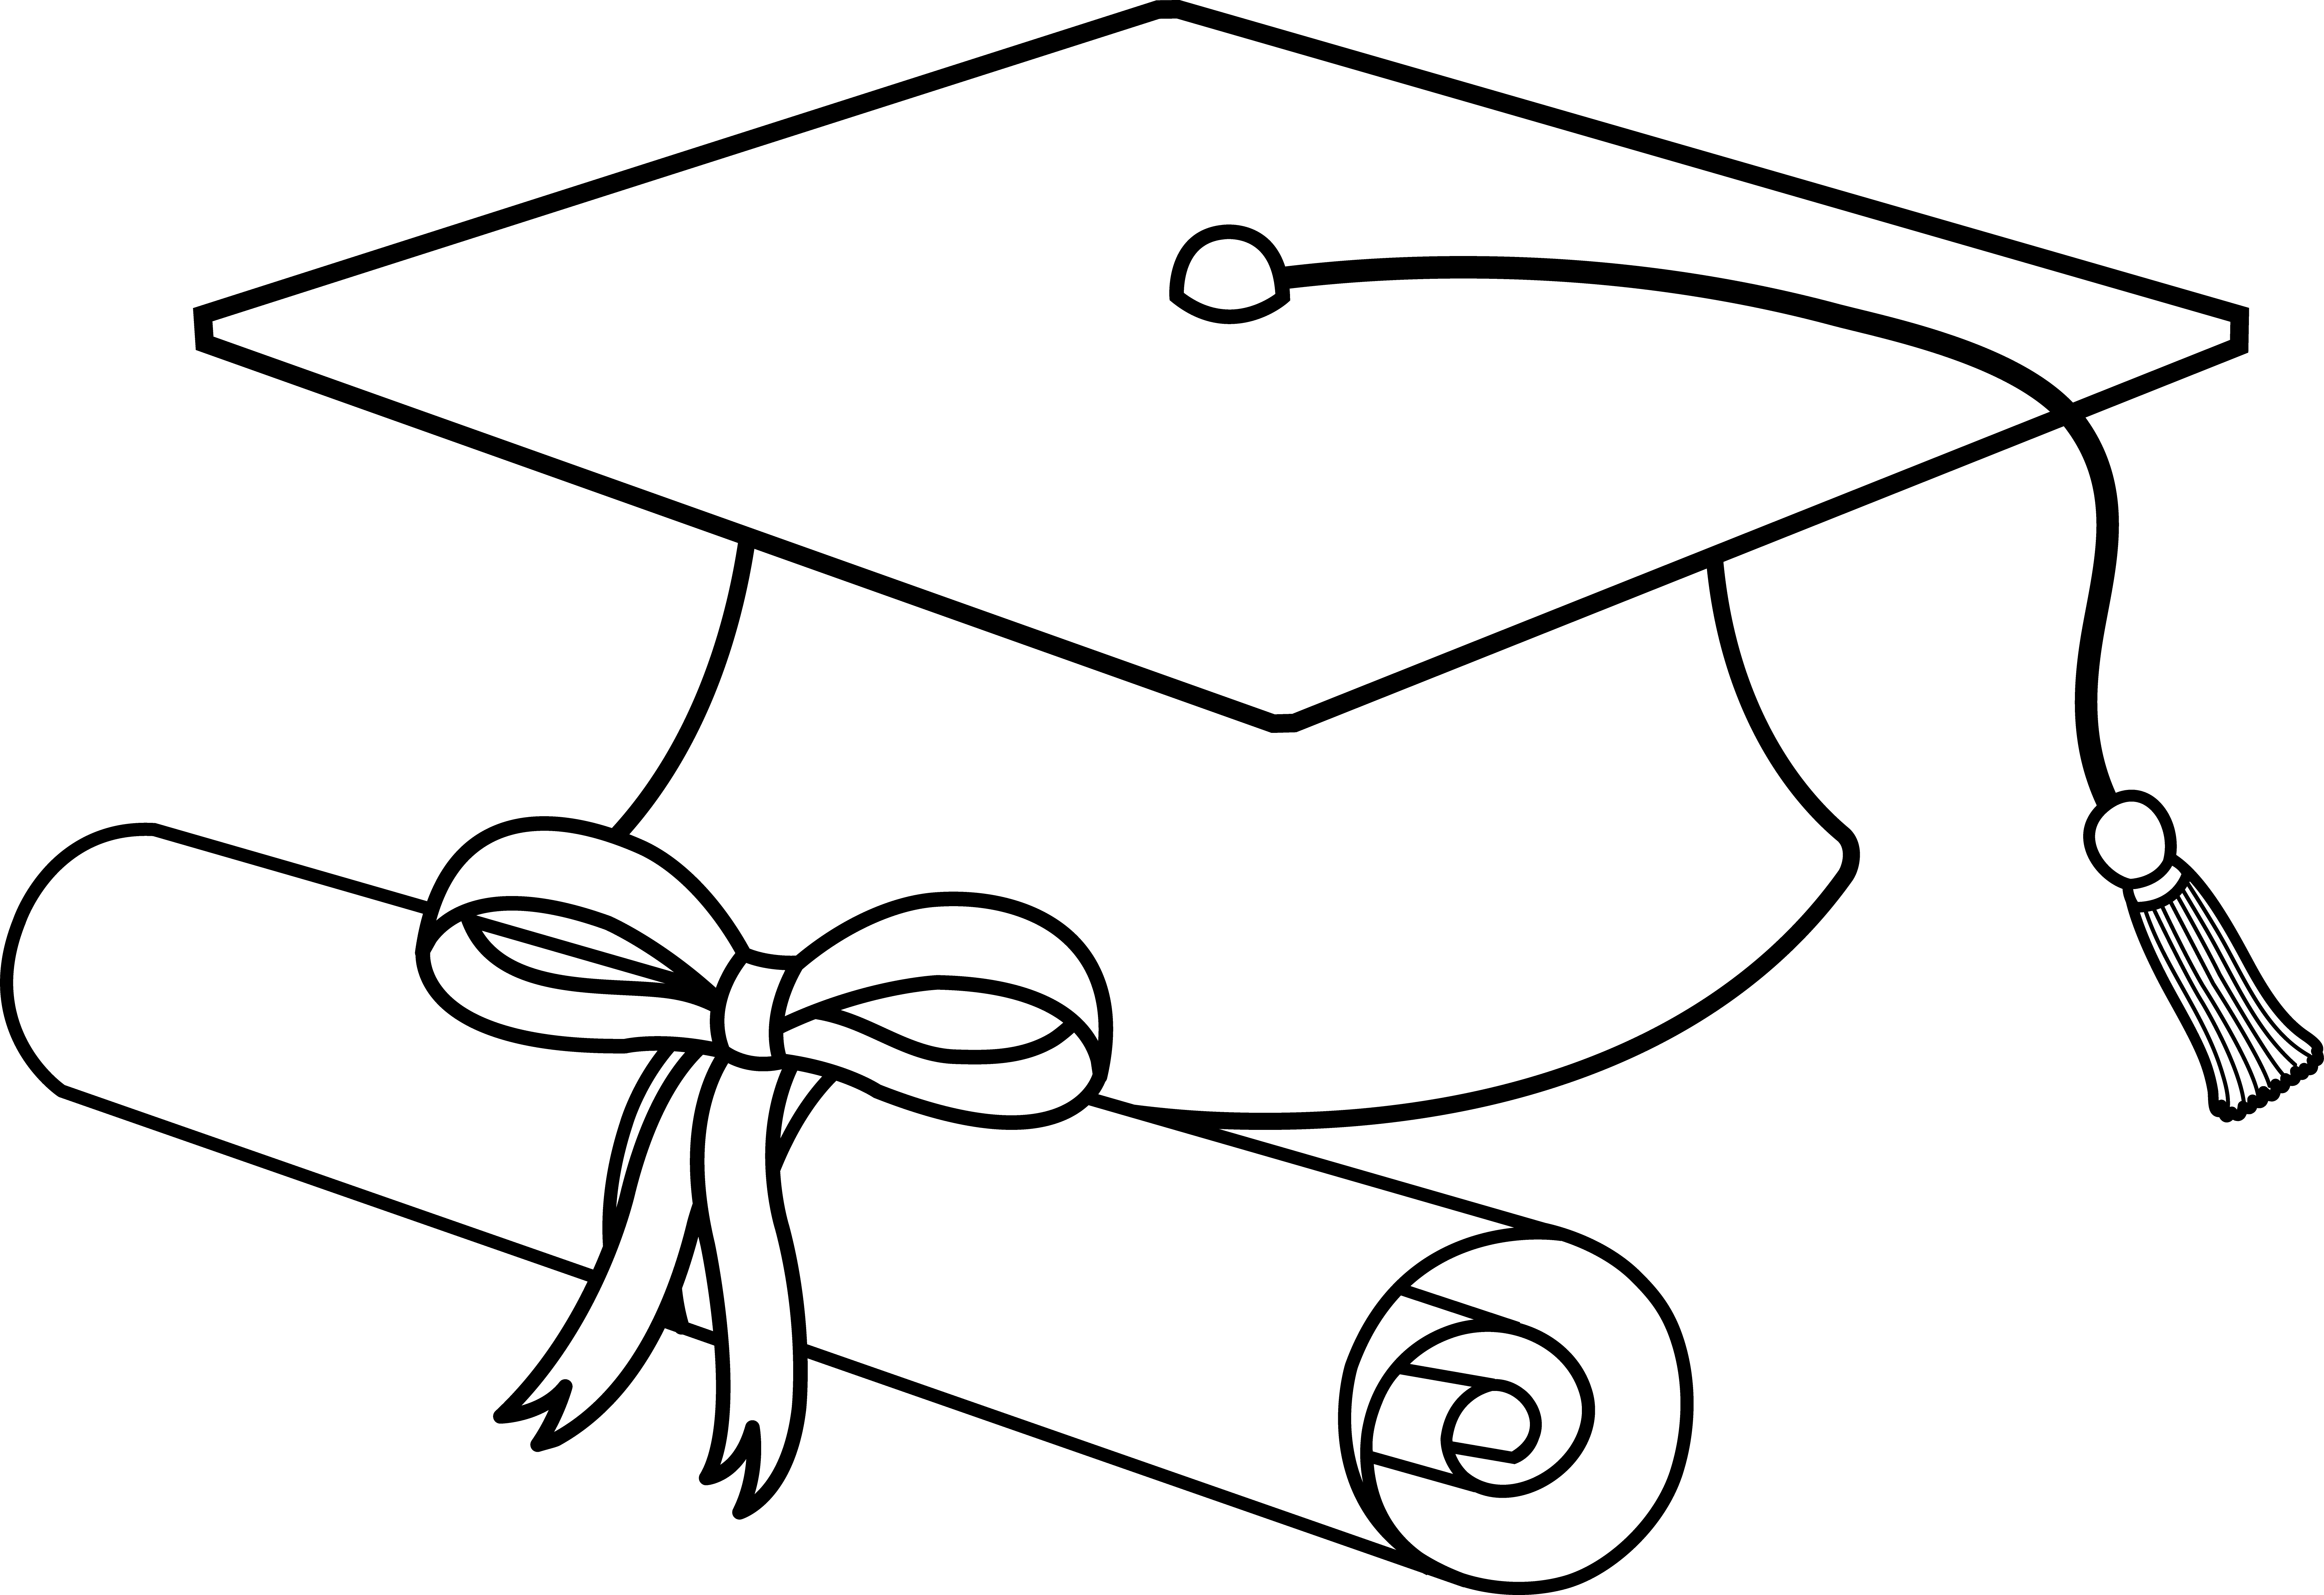 Cap clipart drawing. Flying graduation caps clip